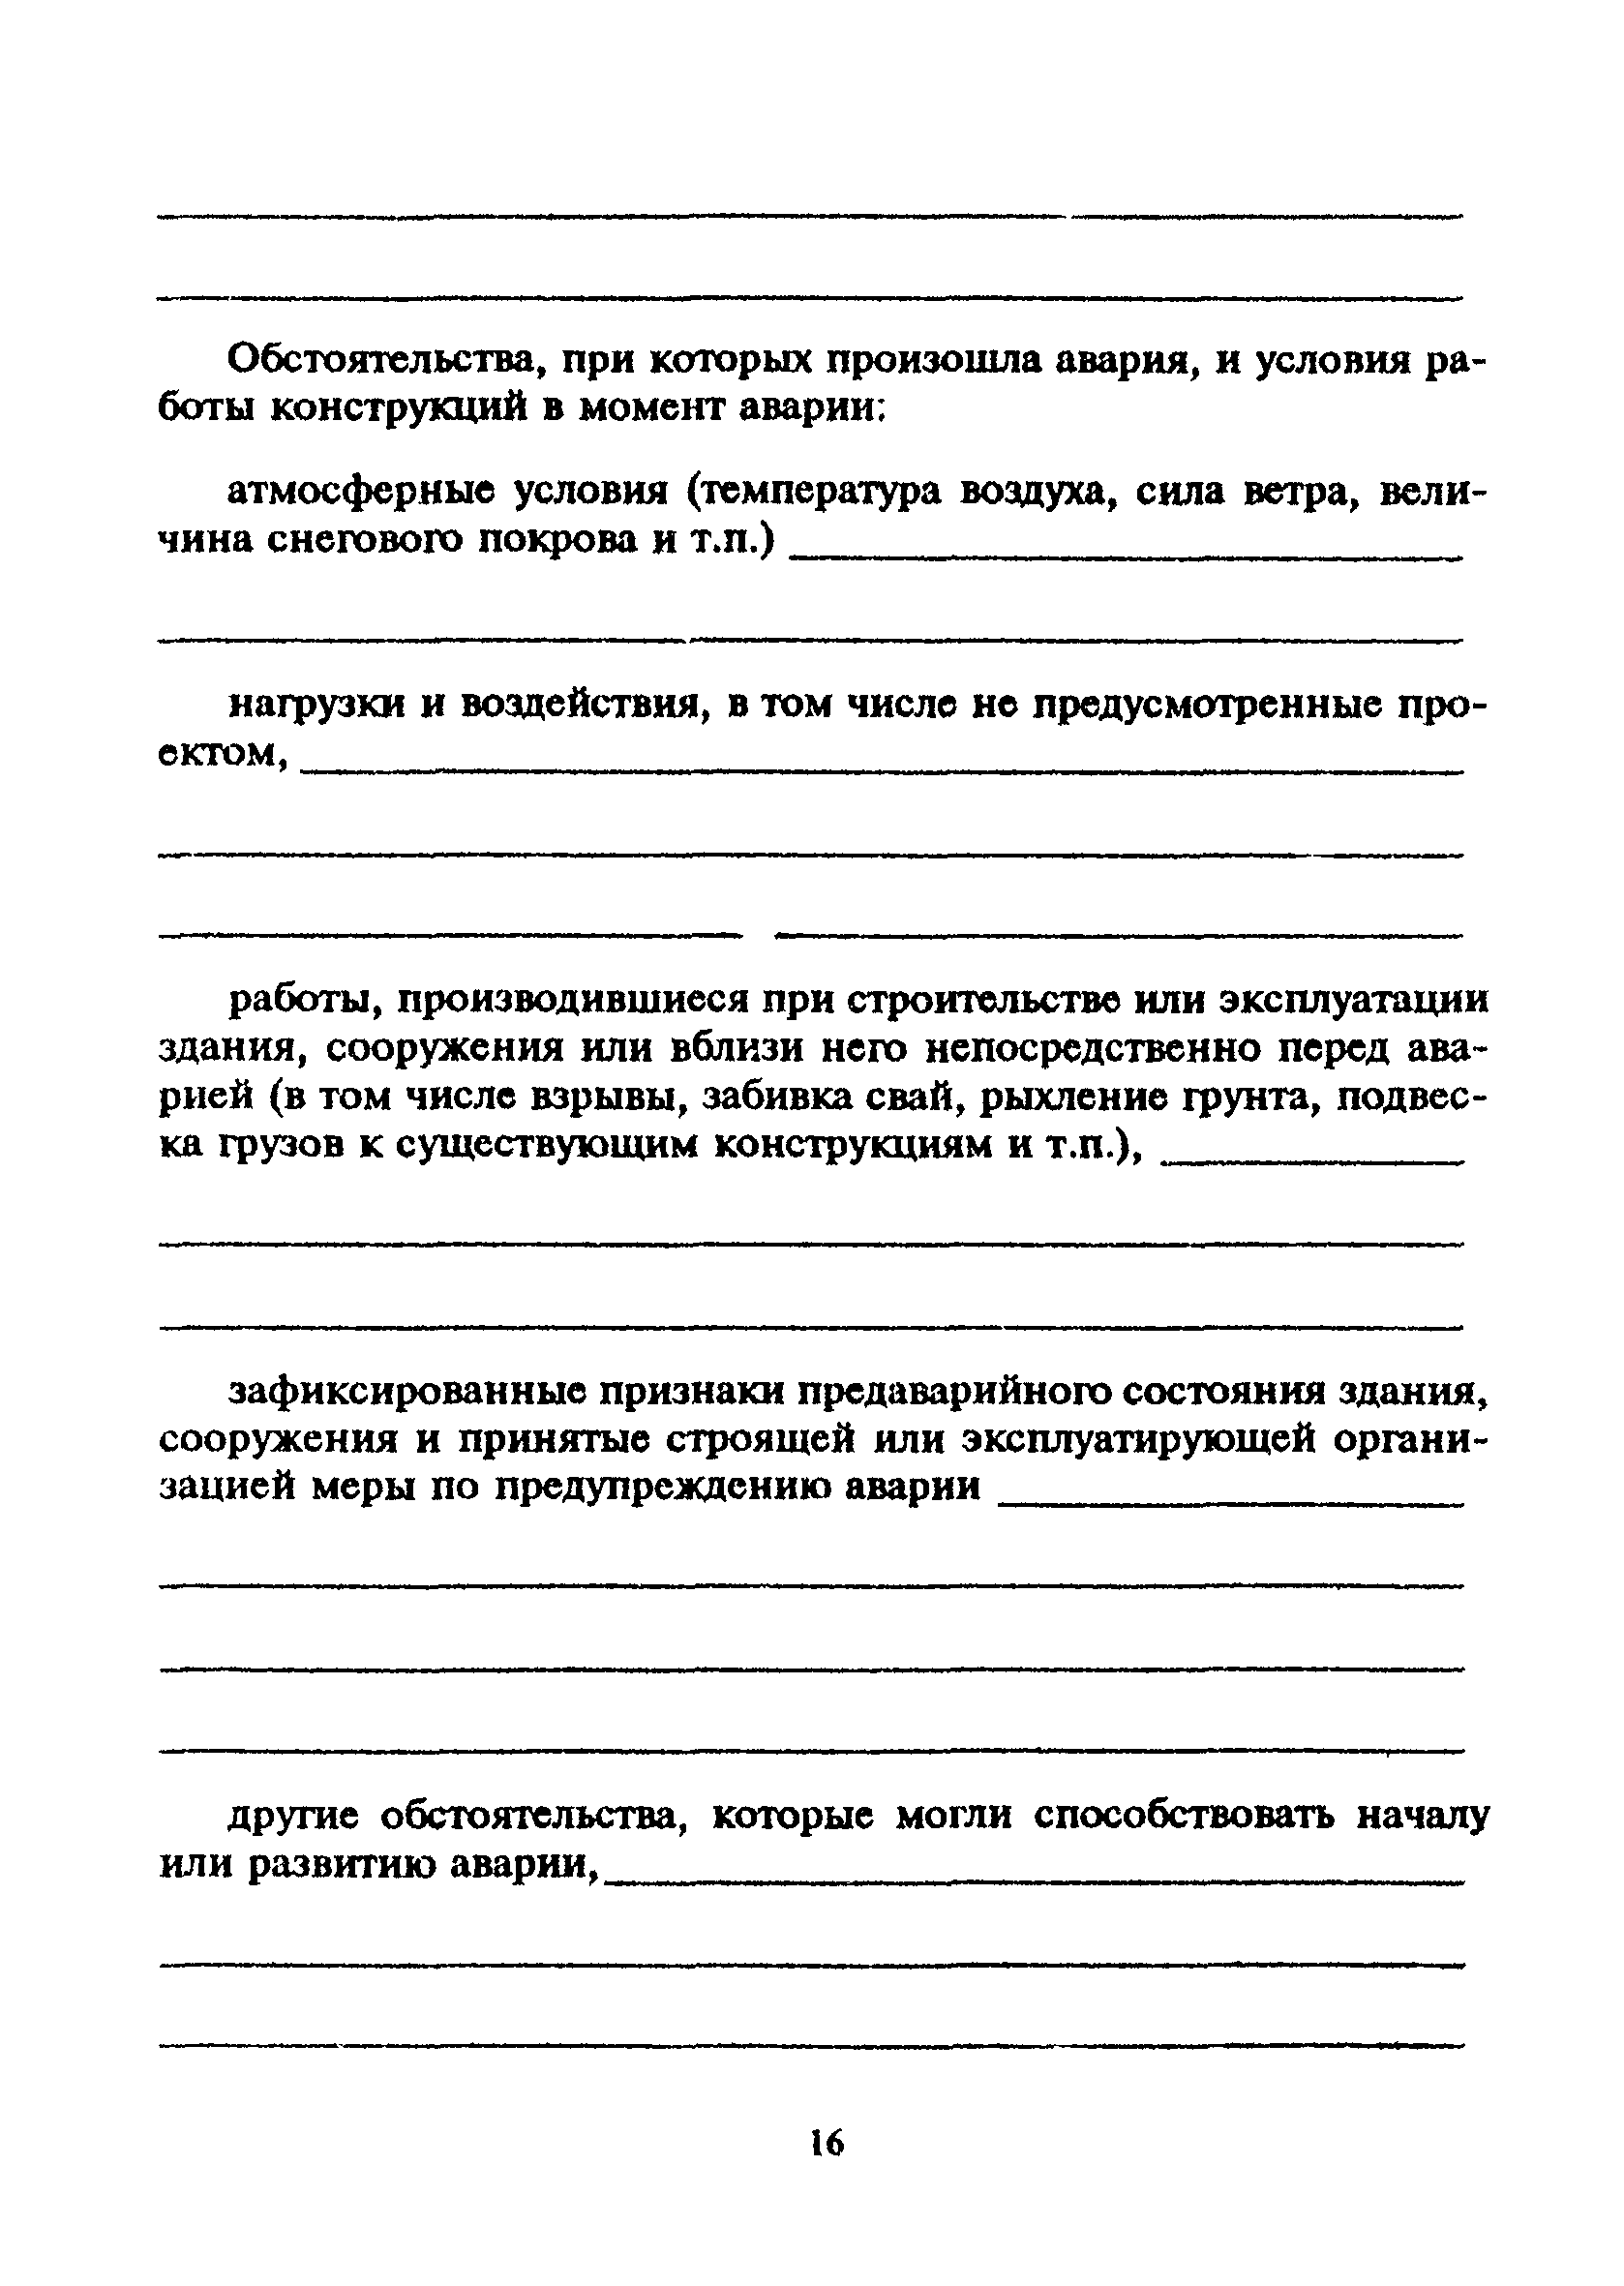 МДС 12-4.2000